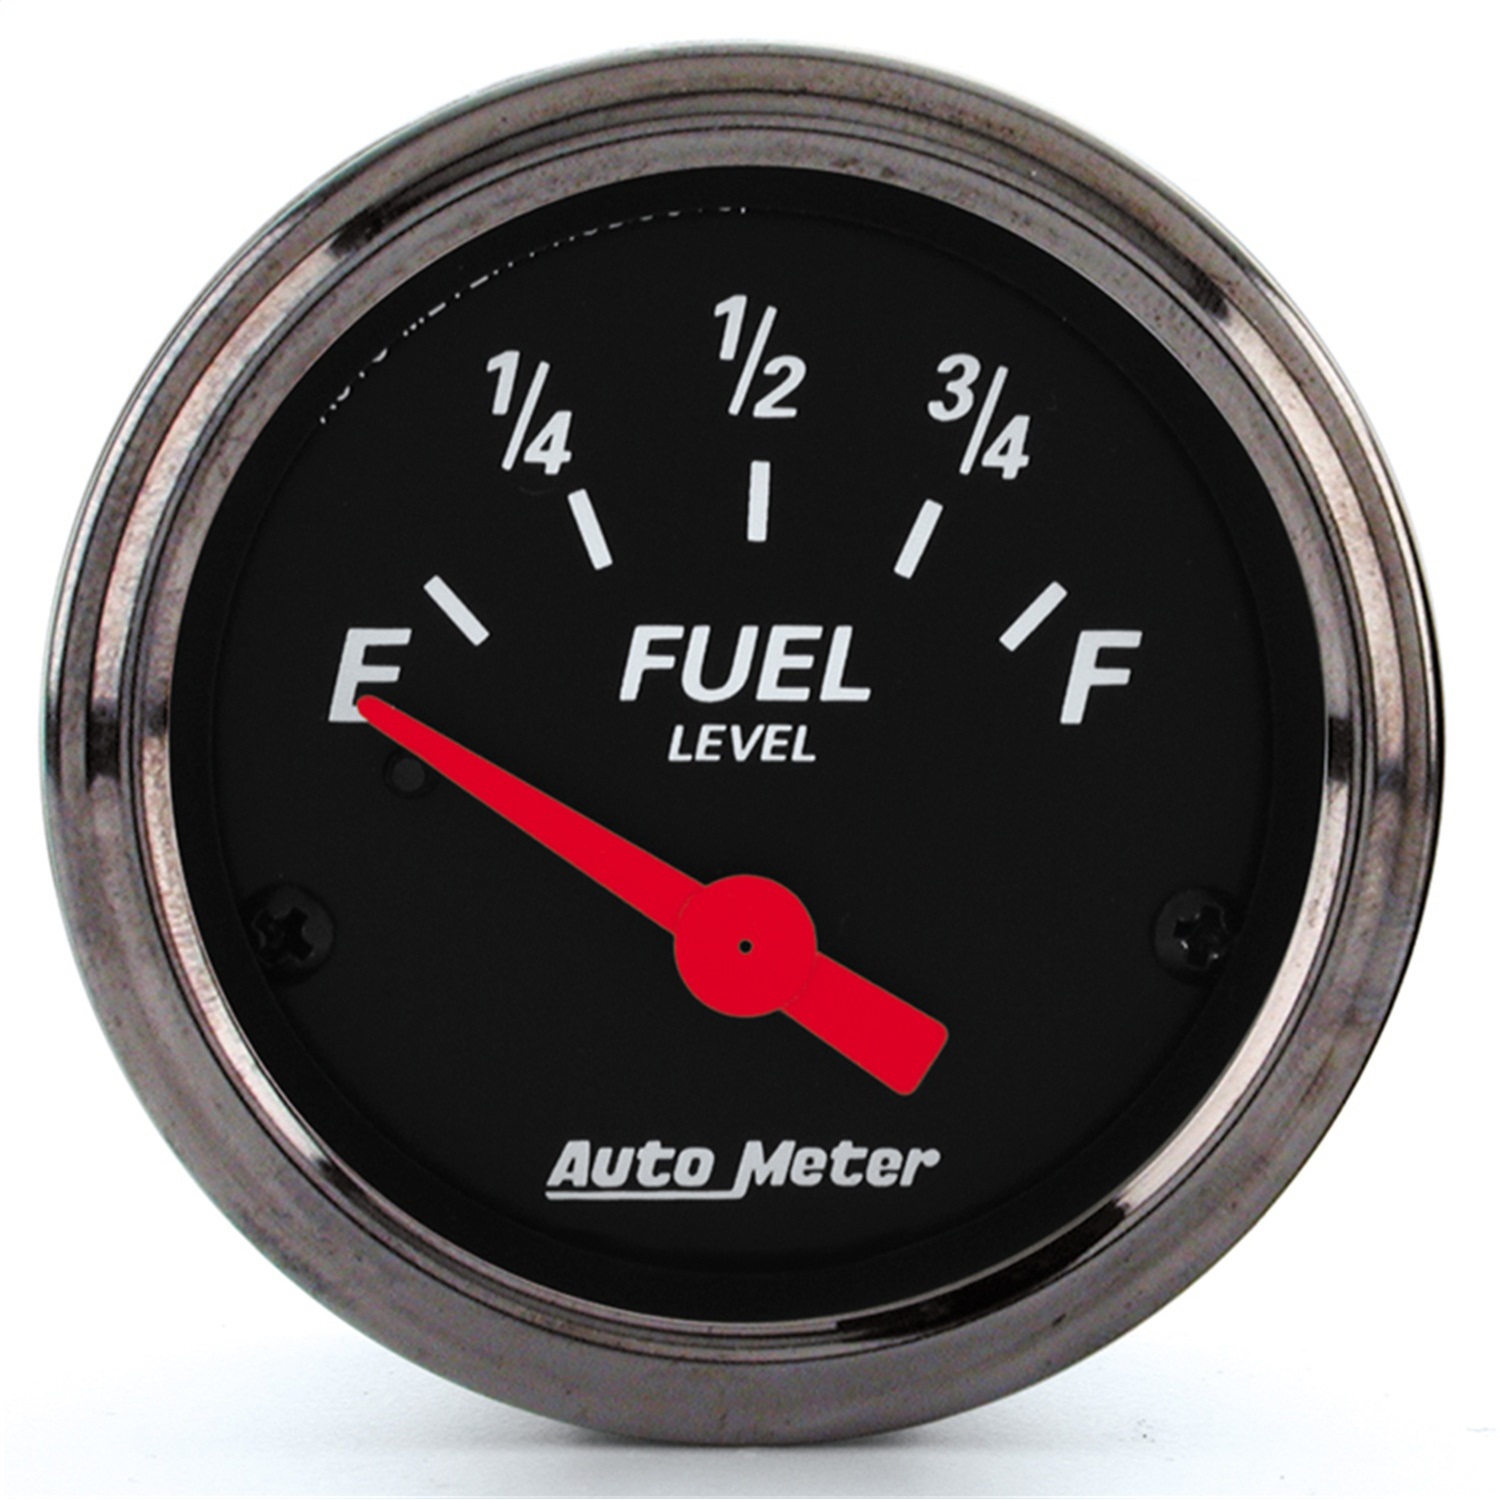 Auto Meter Auto Meter 1415 Designer Black; Fuel Level Gauge